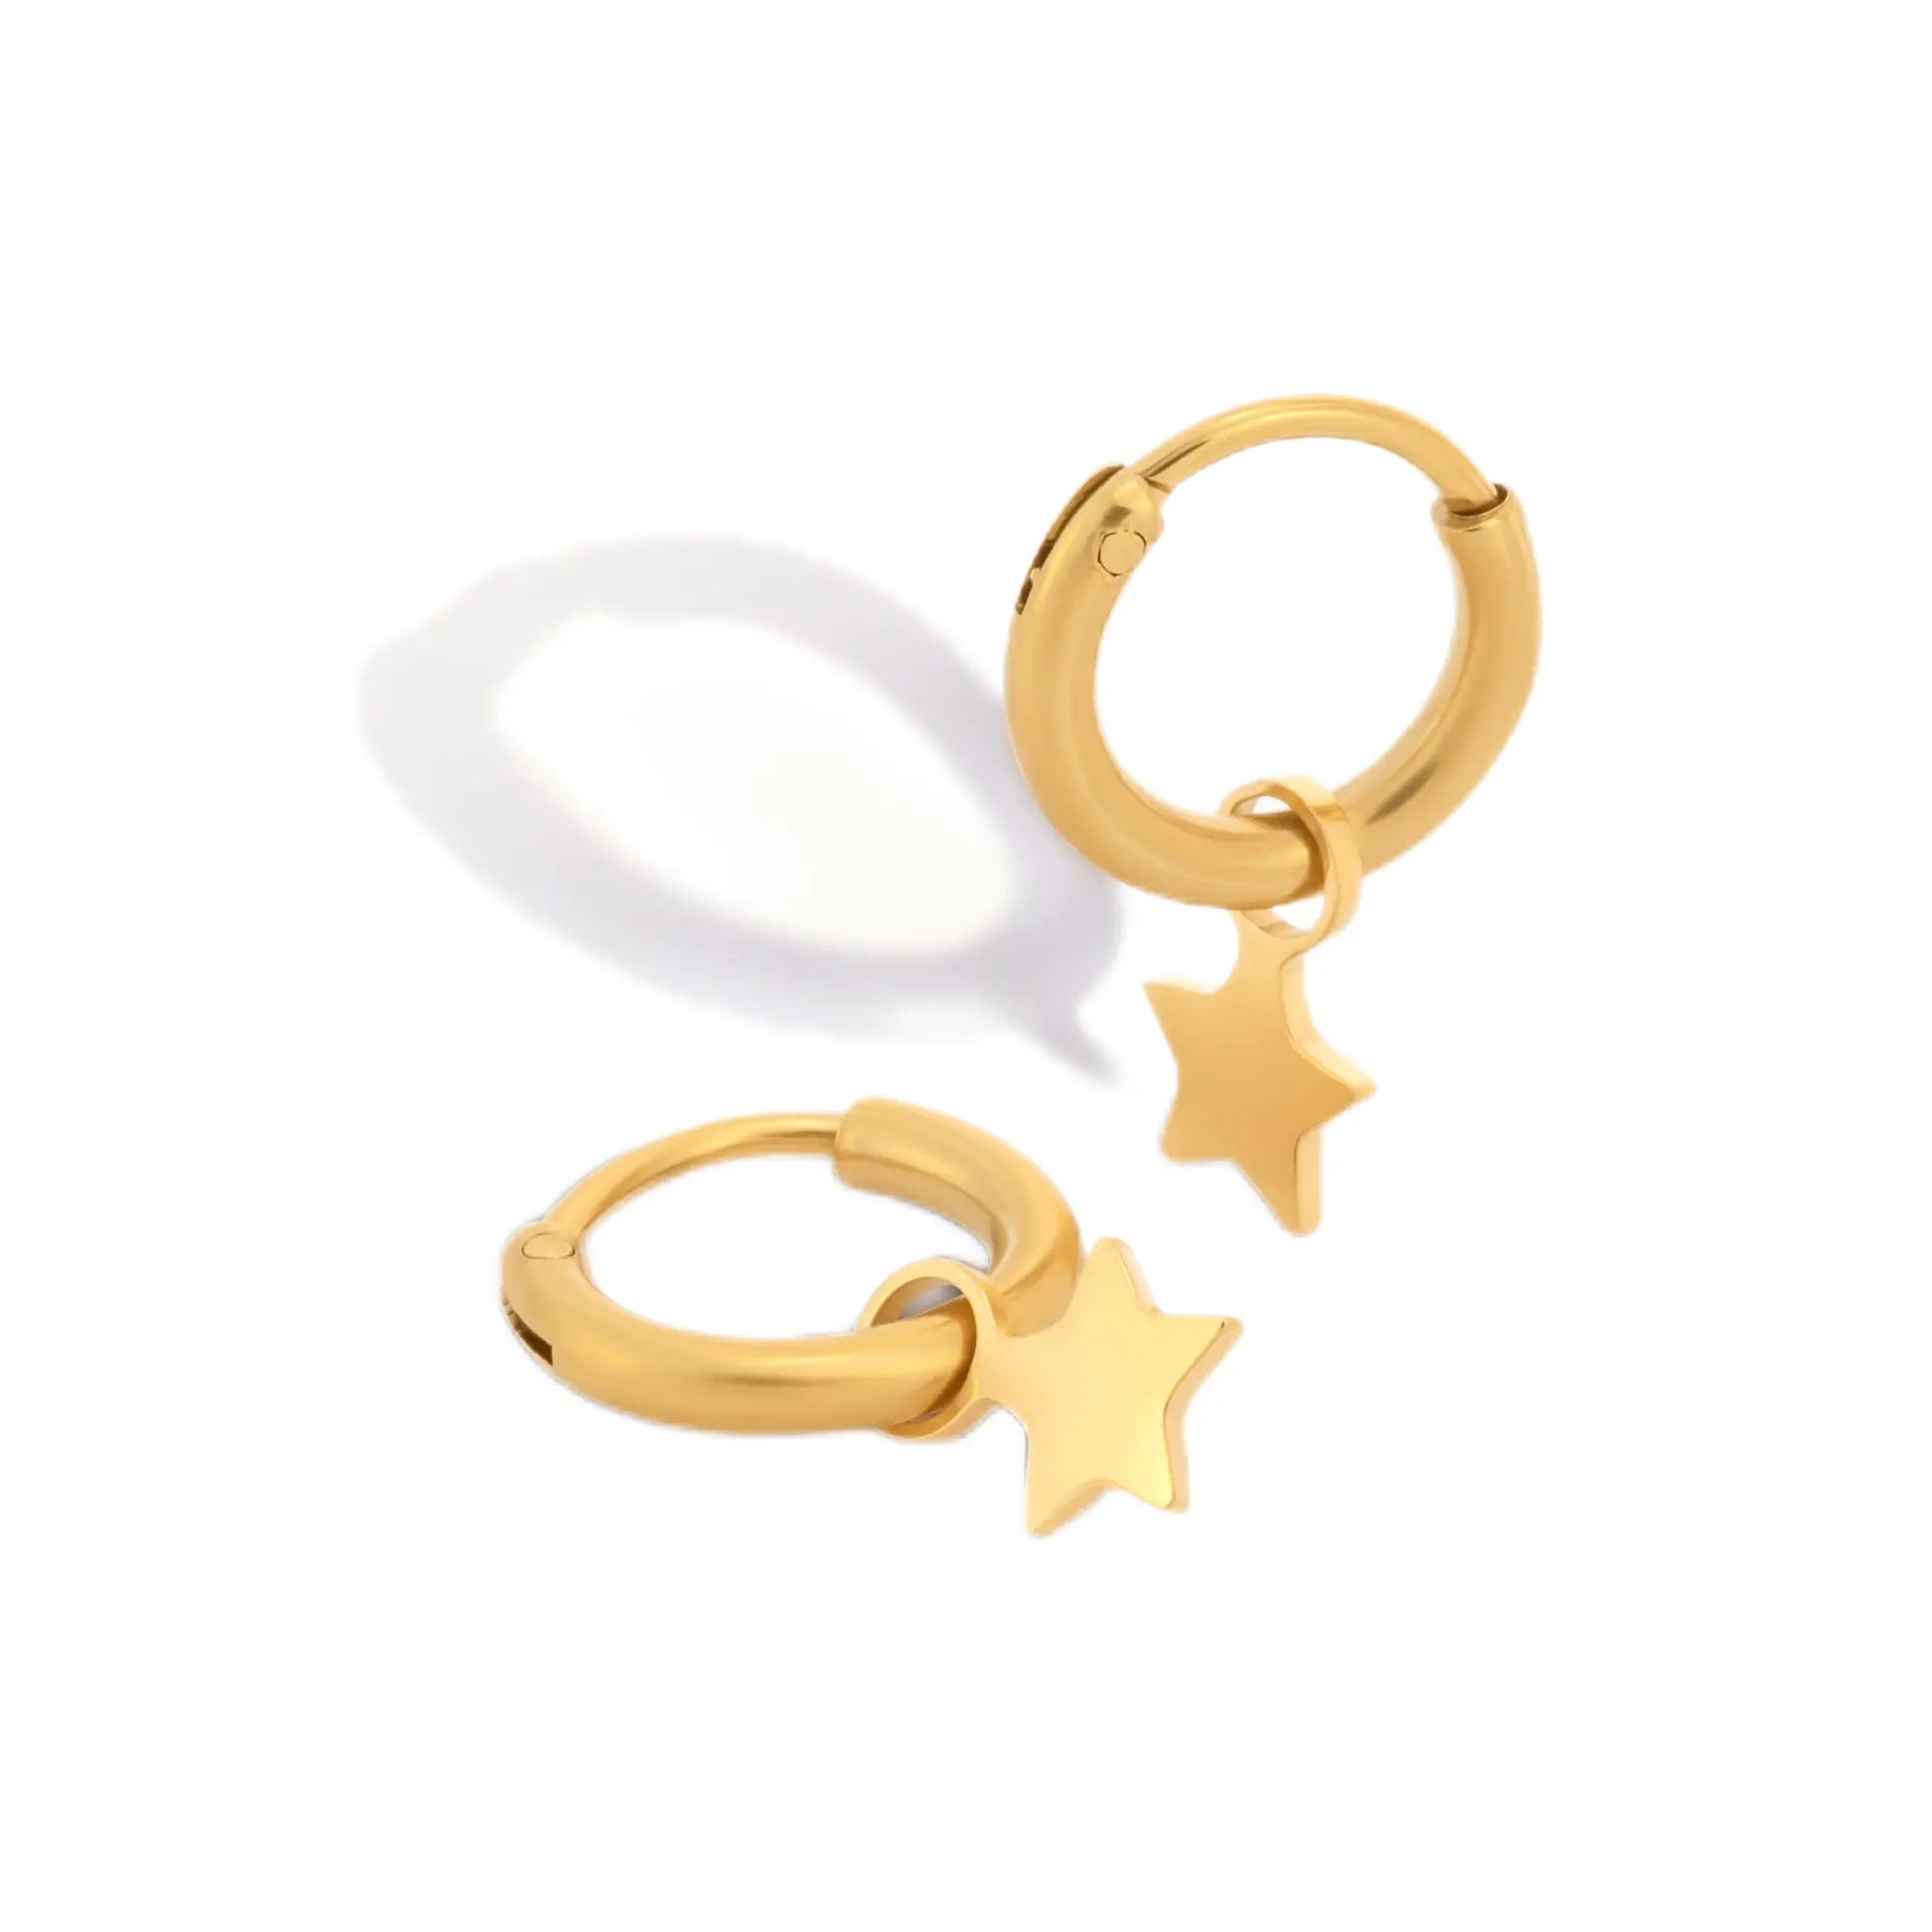 Yıldız şekilli kolye ucu Huggie damla küpe ile özel altın kaplama çemberler kadınlar için paslanmaz çelik takı moda takı küpe